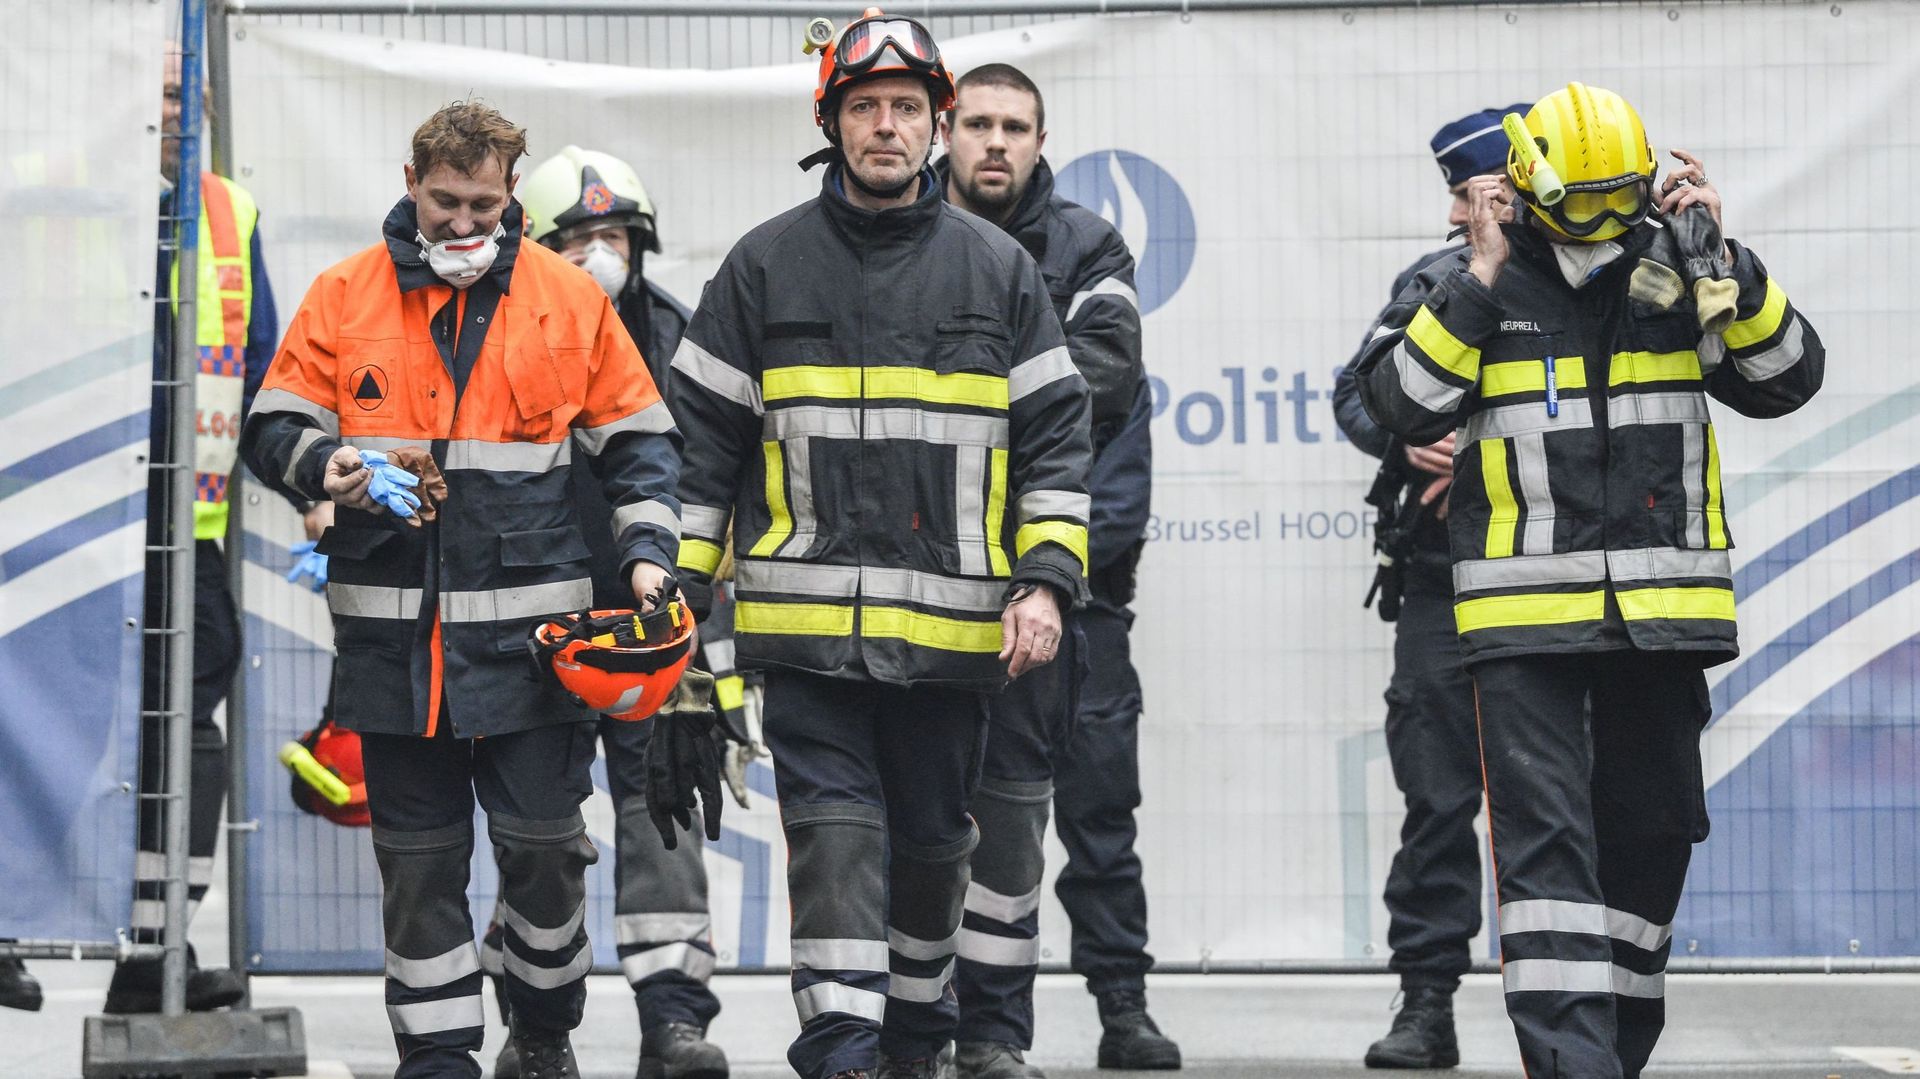 Comment les attentats de Bruxelles ont-ils marqué les services de secours ?